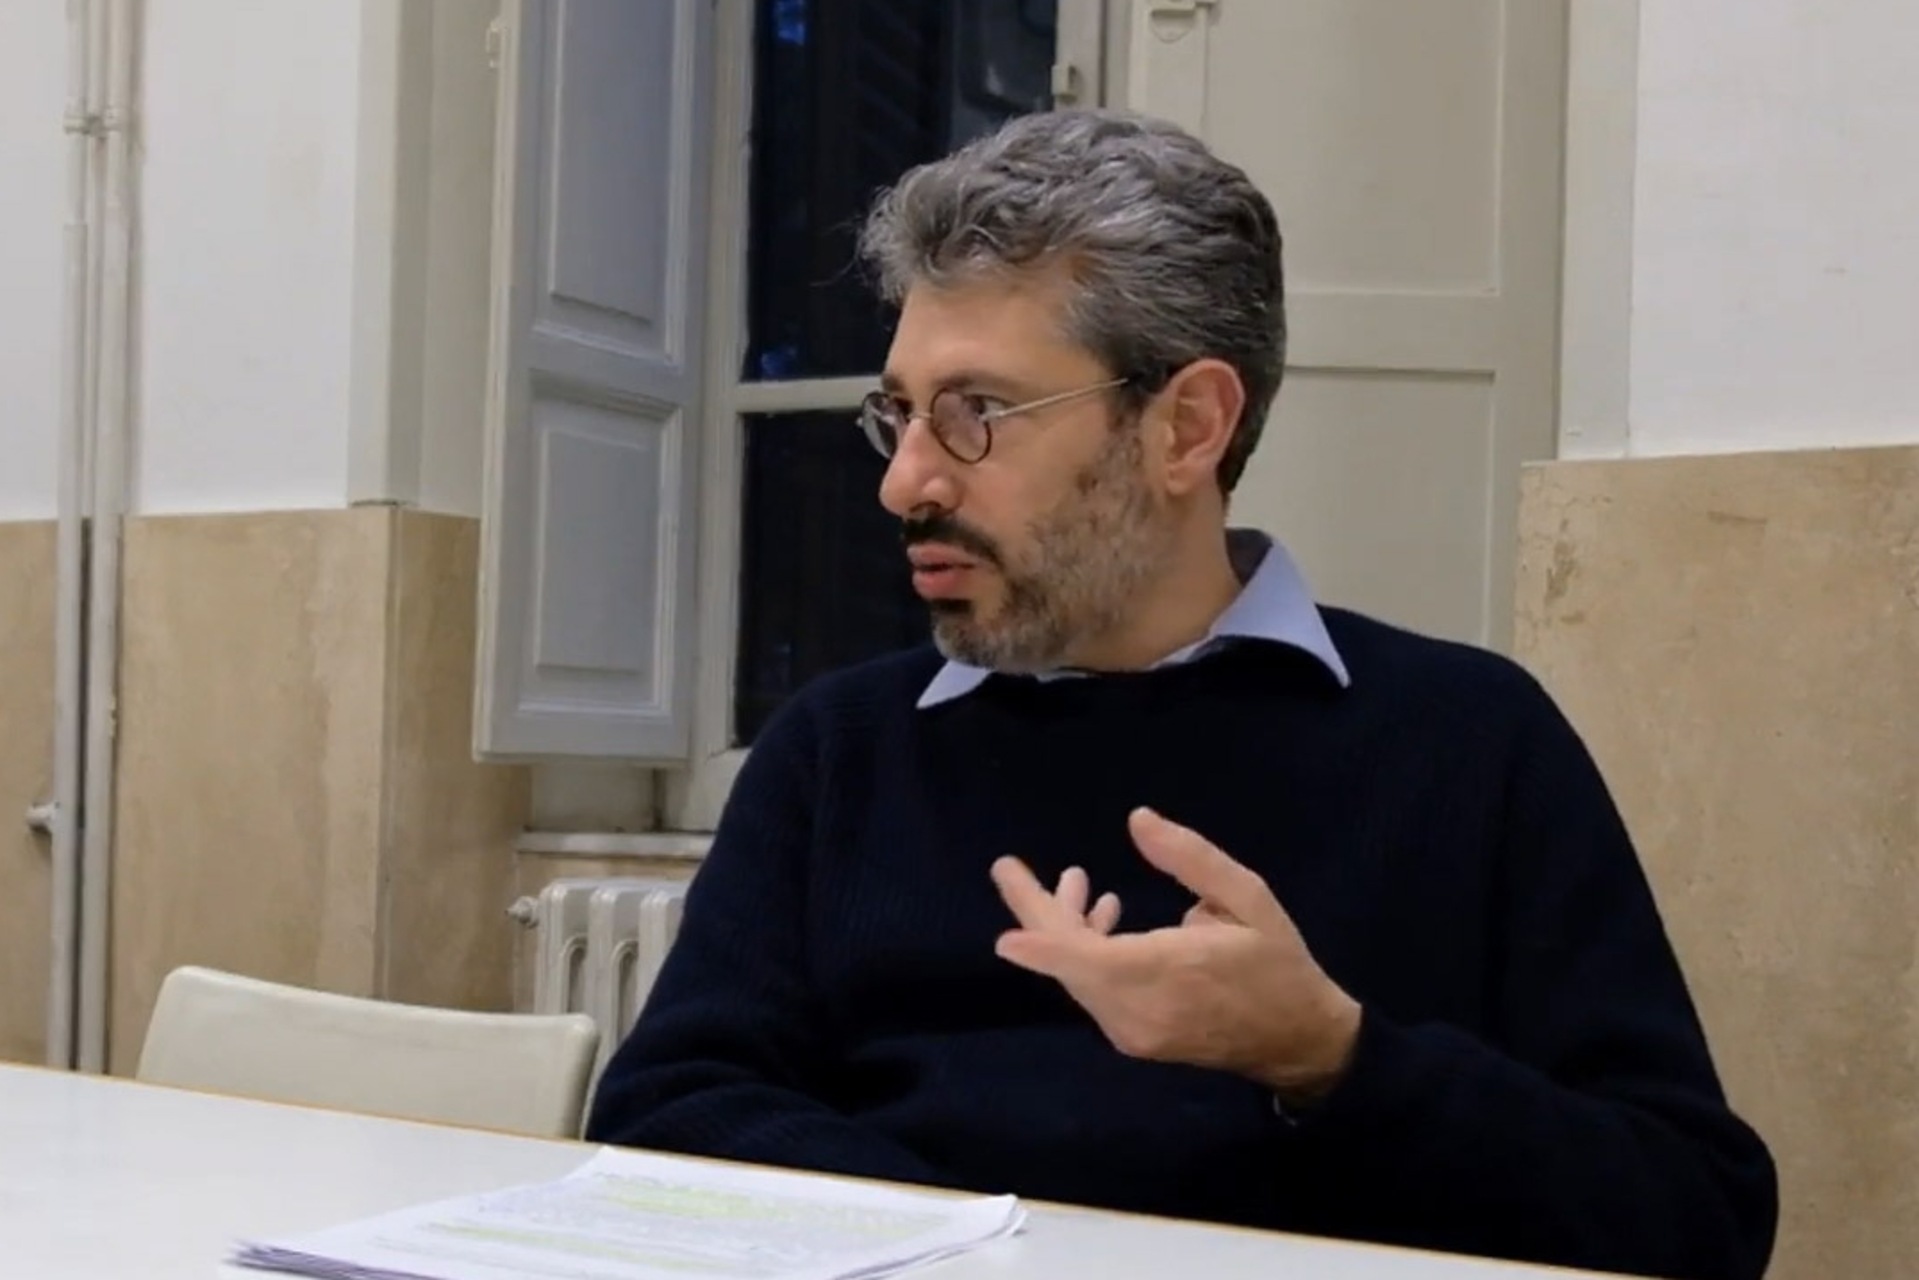 การปฏิวัติอวกาศทางอากาศ: ศาสตราจารย์ Matteo Vegetti จากสถาบันการออกแบบแผนกสิ่งแวดล้อมการก่อสร้างและการออกแบบของมหาวิทยาลัยวิทยาศาสตร์ประยุกต์และศิลปะแห่งสวิตเซอร์แลนด์ของอิตาลี